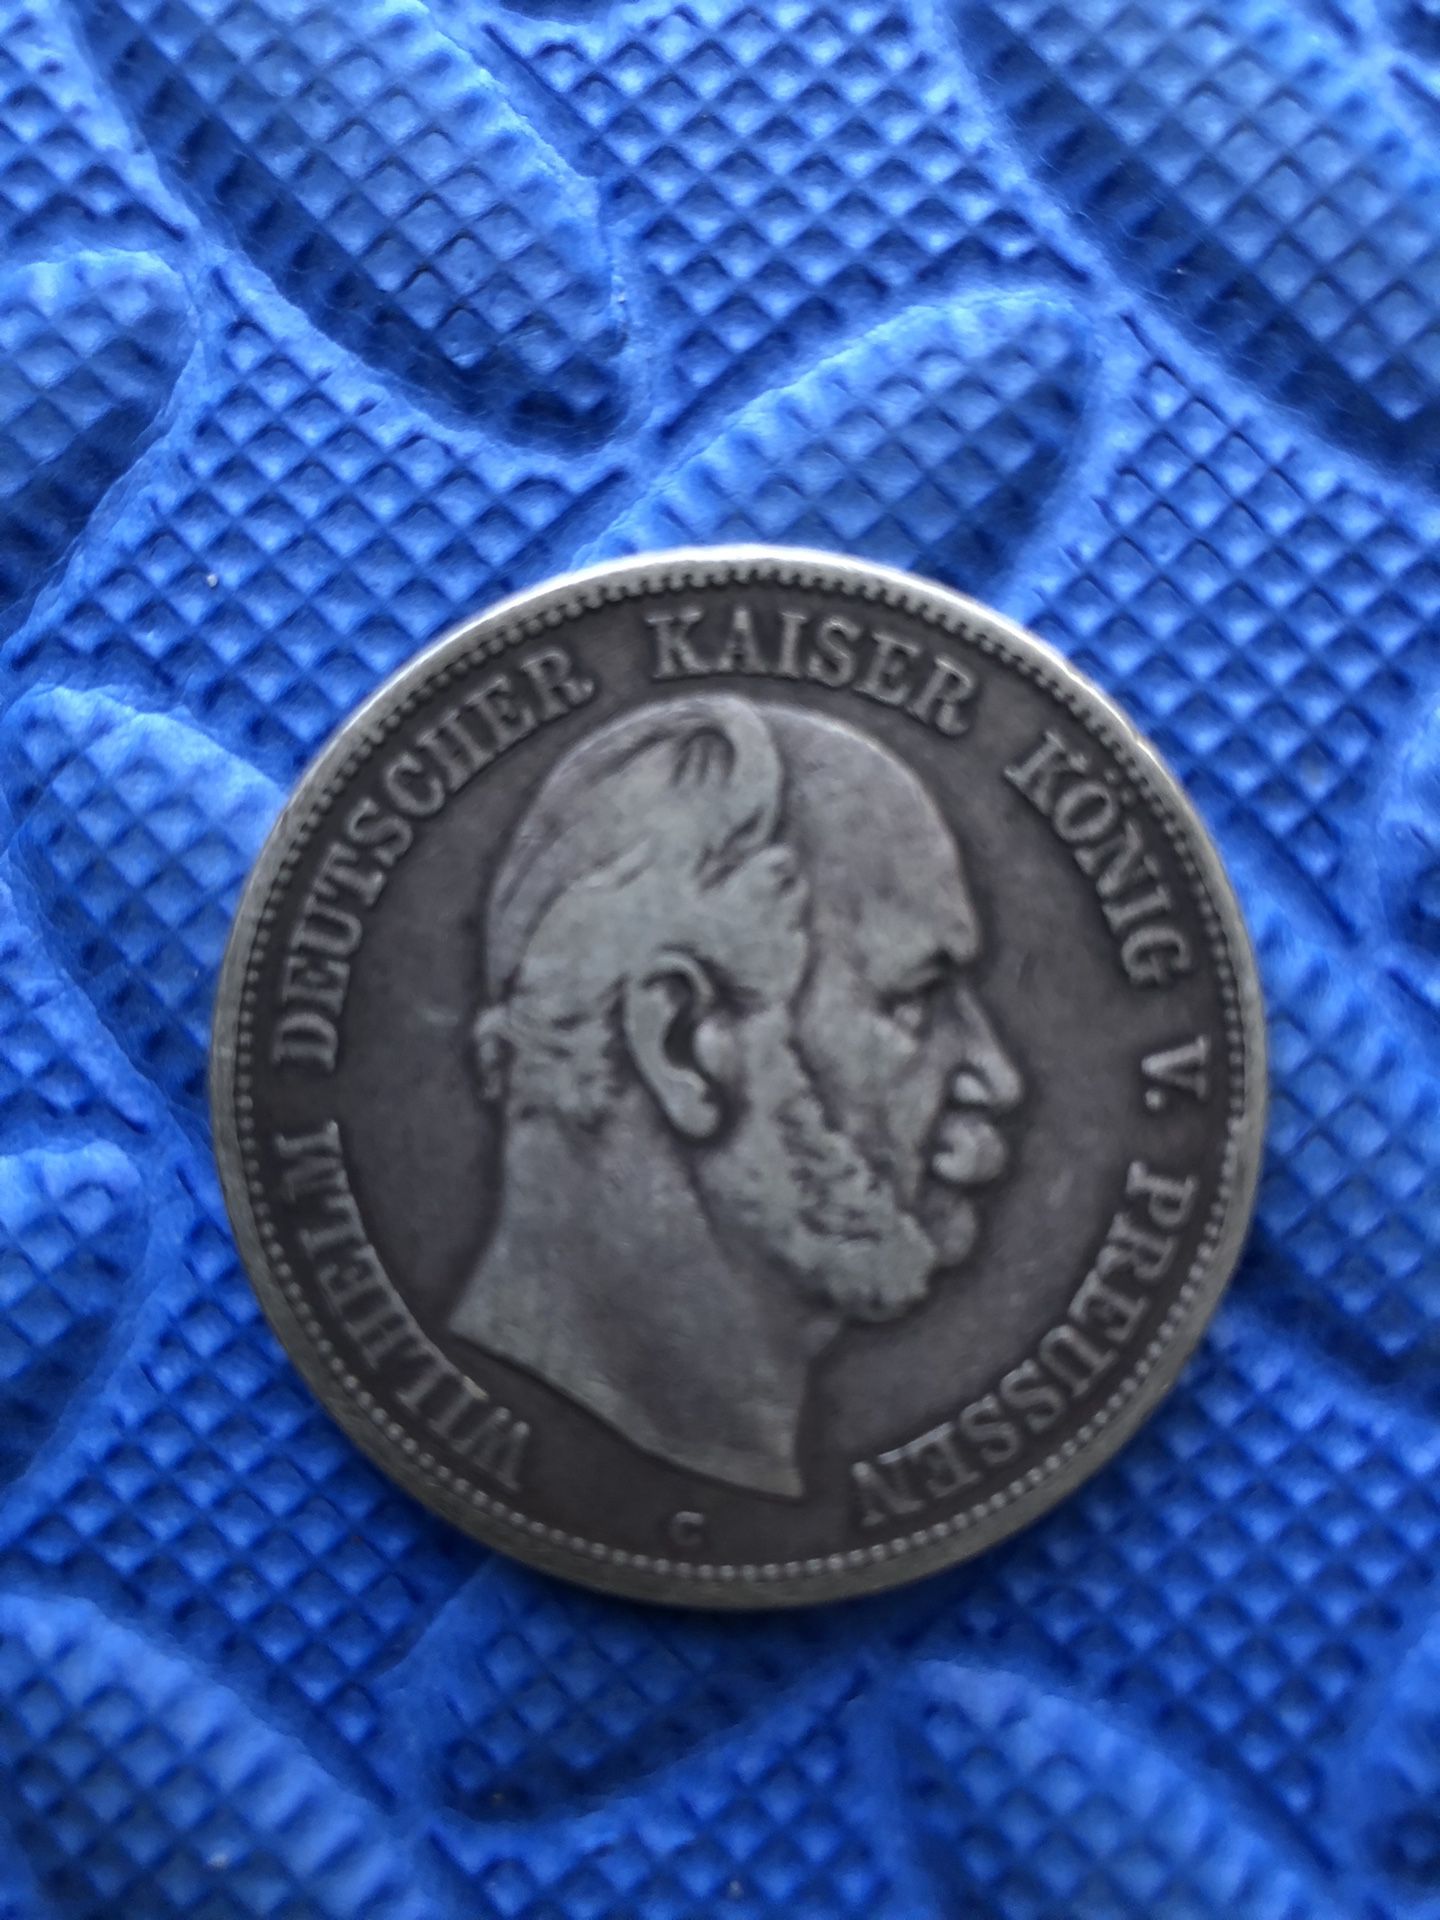 1876-C Silver Deutsches Reich Mark Coin